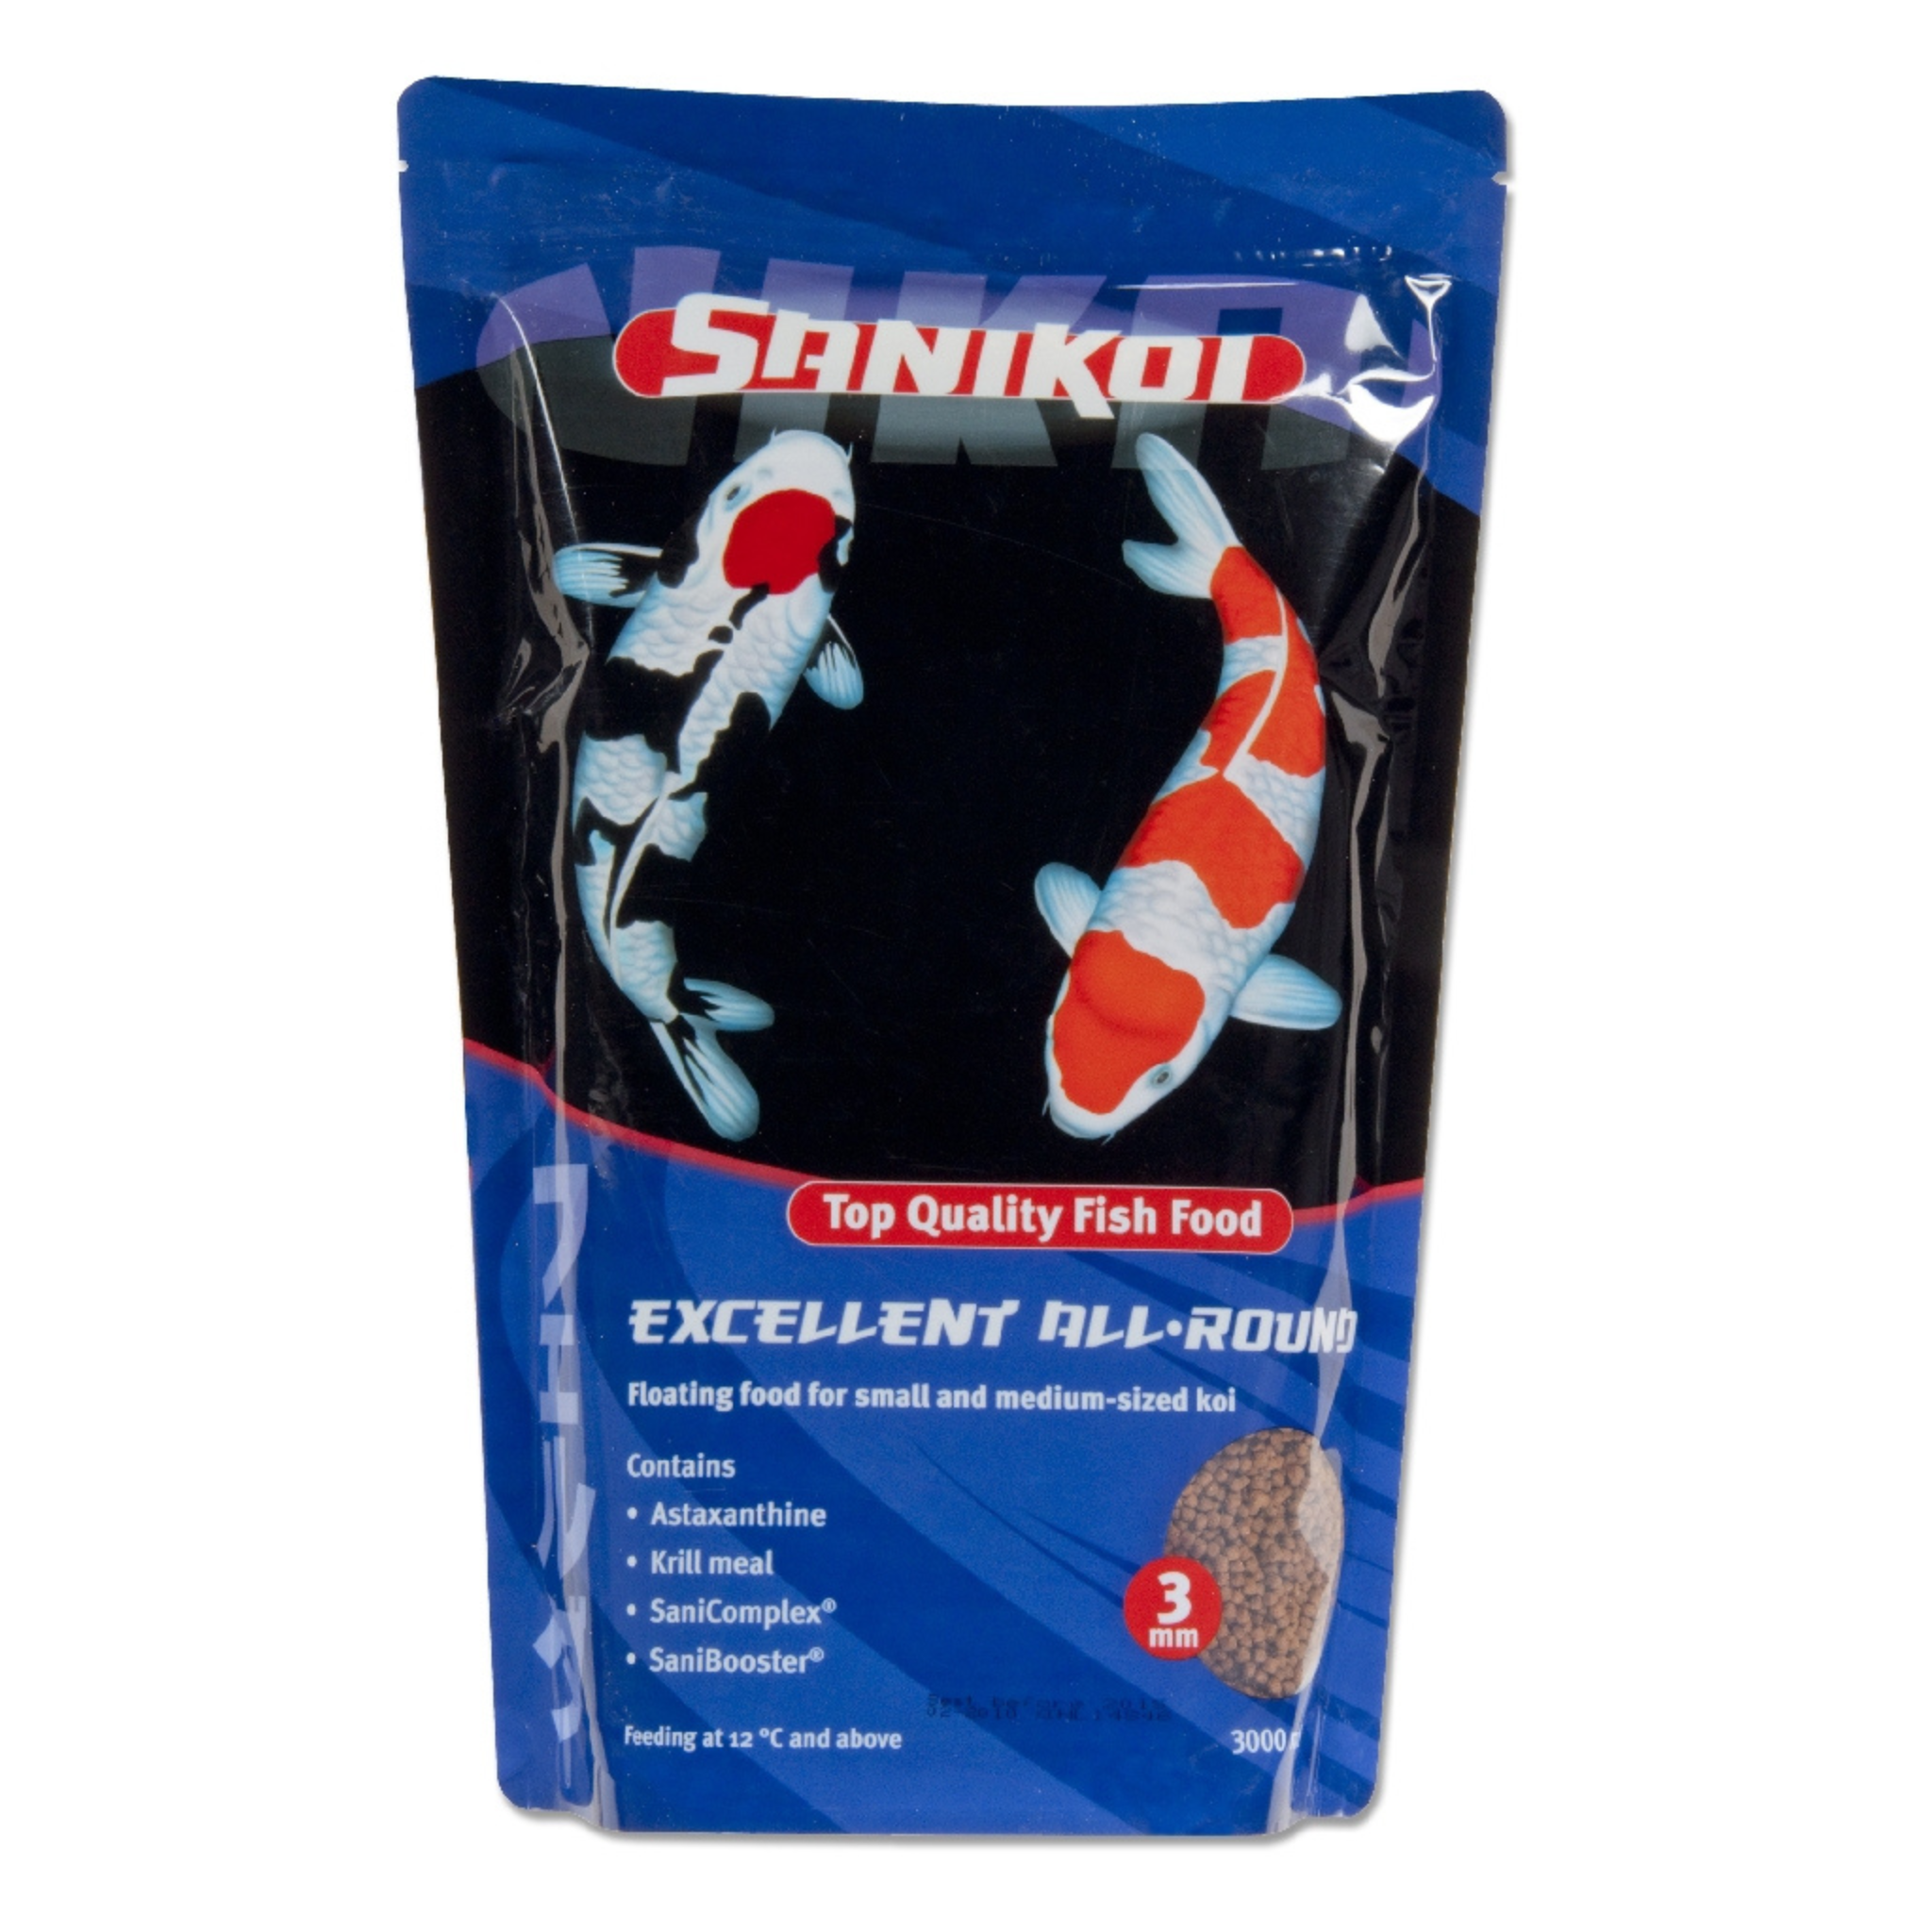 SaniKoi Exl. All-Round 3 mm